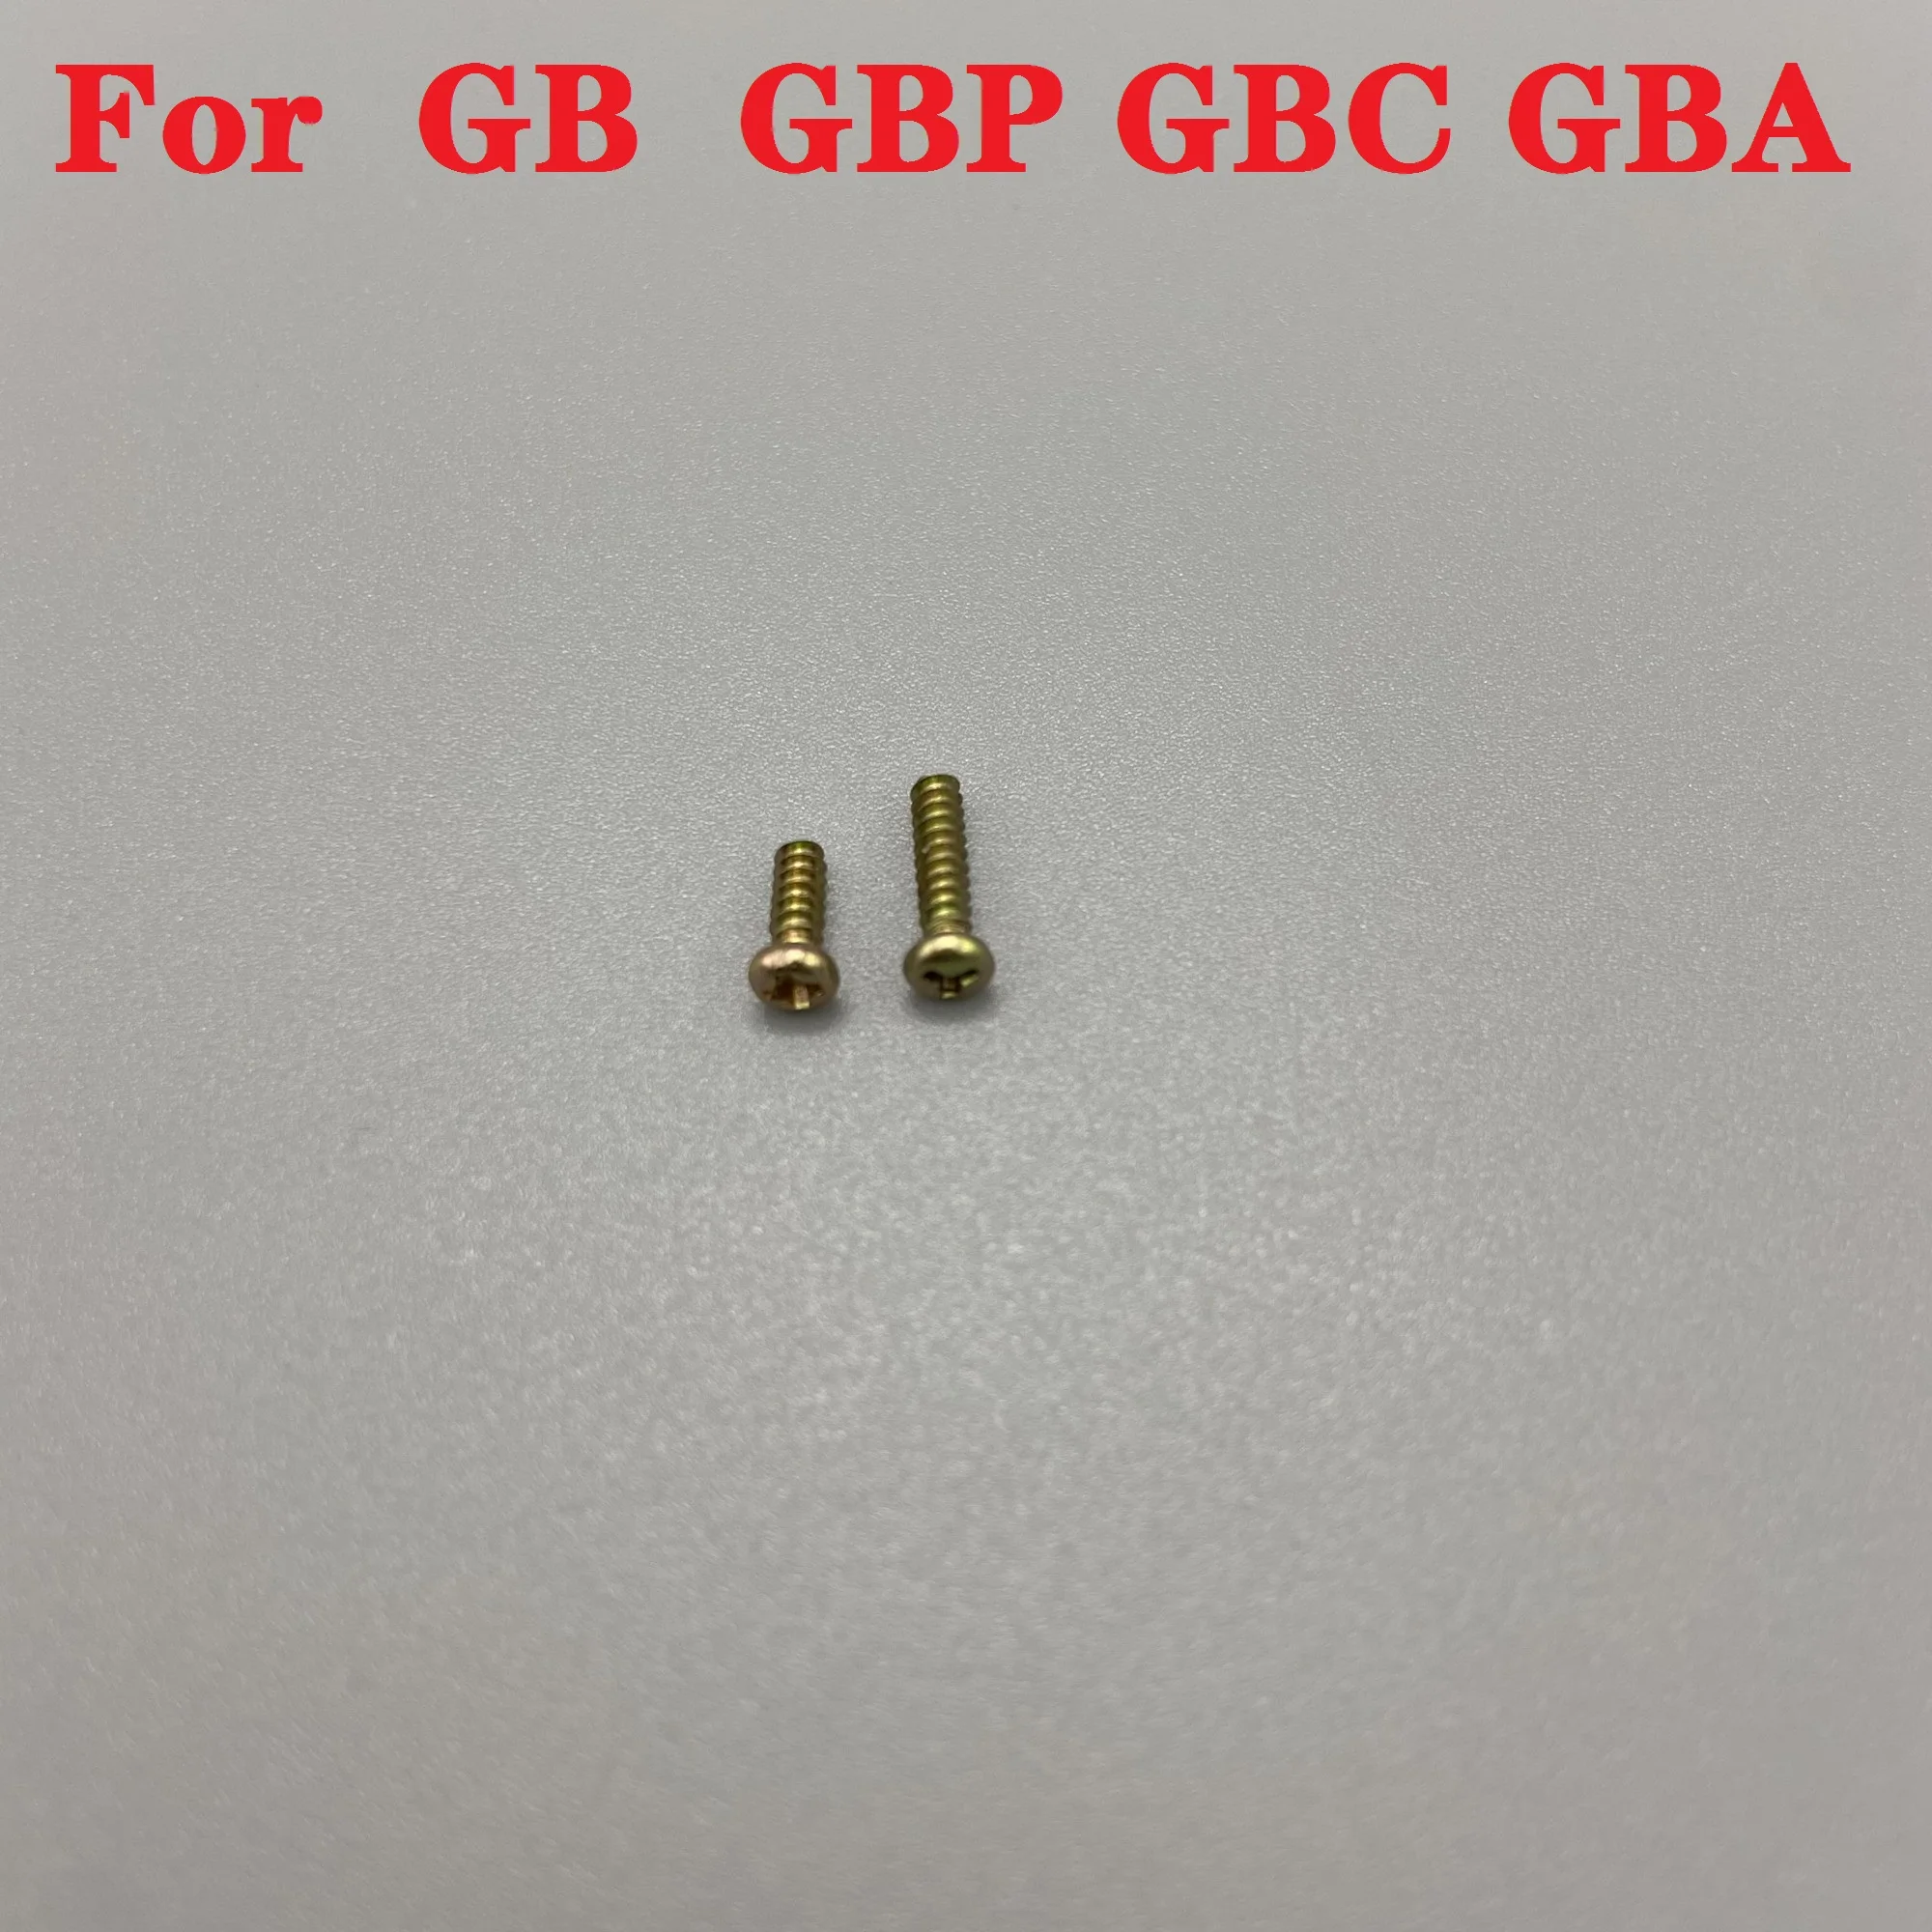 Винт подходящ за корпуса и дънната платка Gameboy GB GBP GBC, GBA